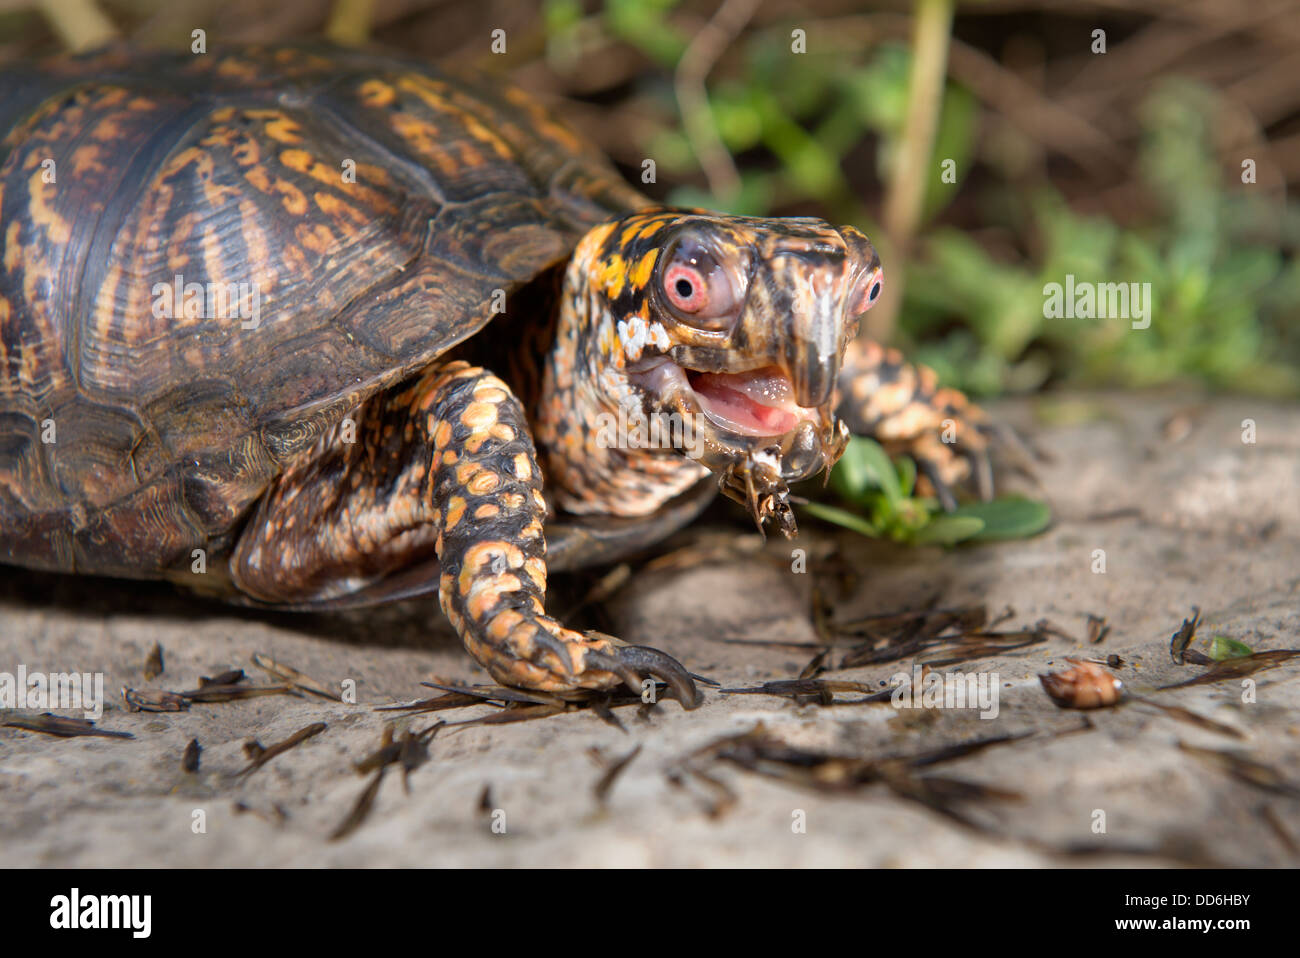 Schuss von einem niedlichen Kasten-Schildkröte sitzt auf einem Felsen außerhalb mit seinen geöffneten Mund Nahaufnahme. Stockfoto